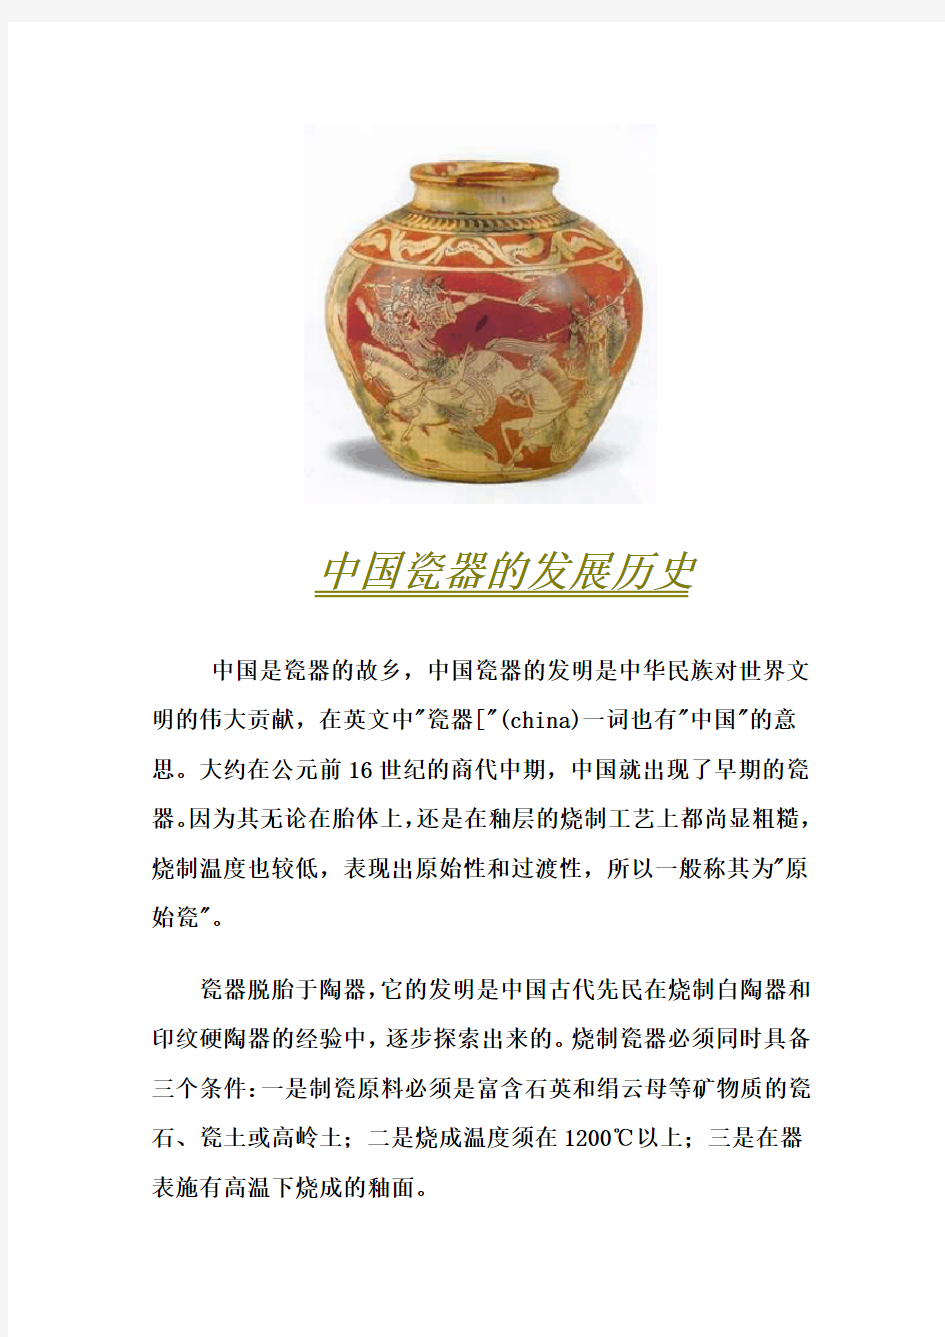 中国瓷器的发展历史